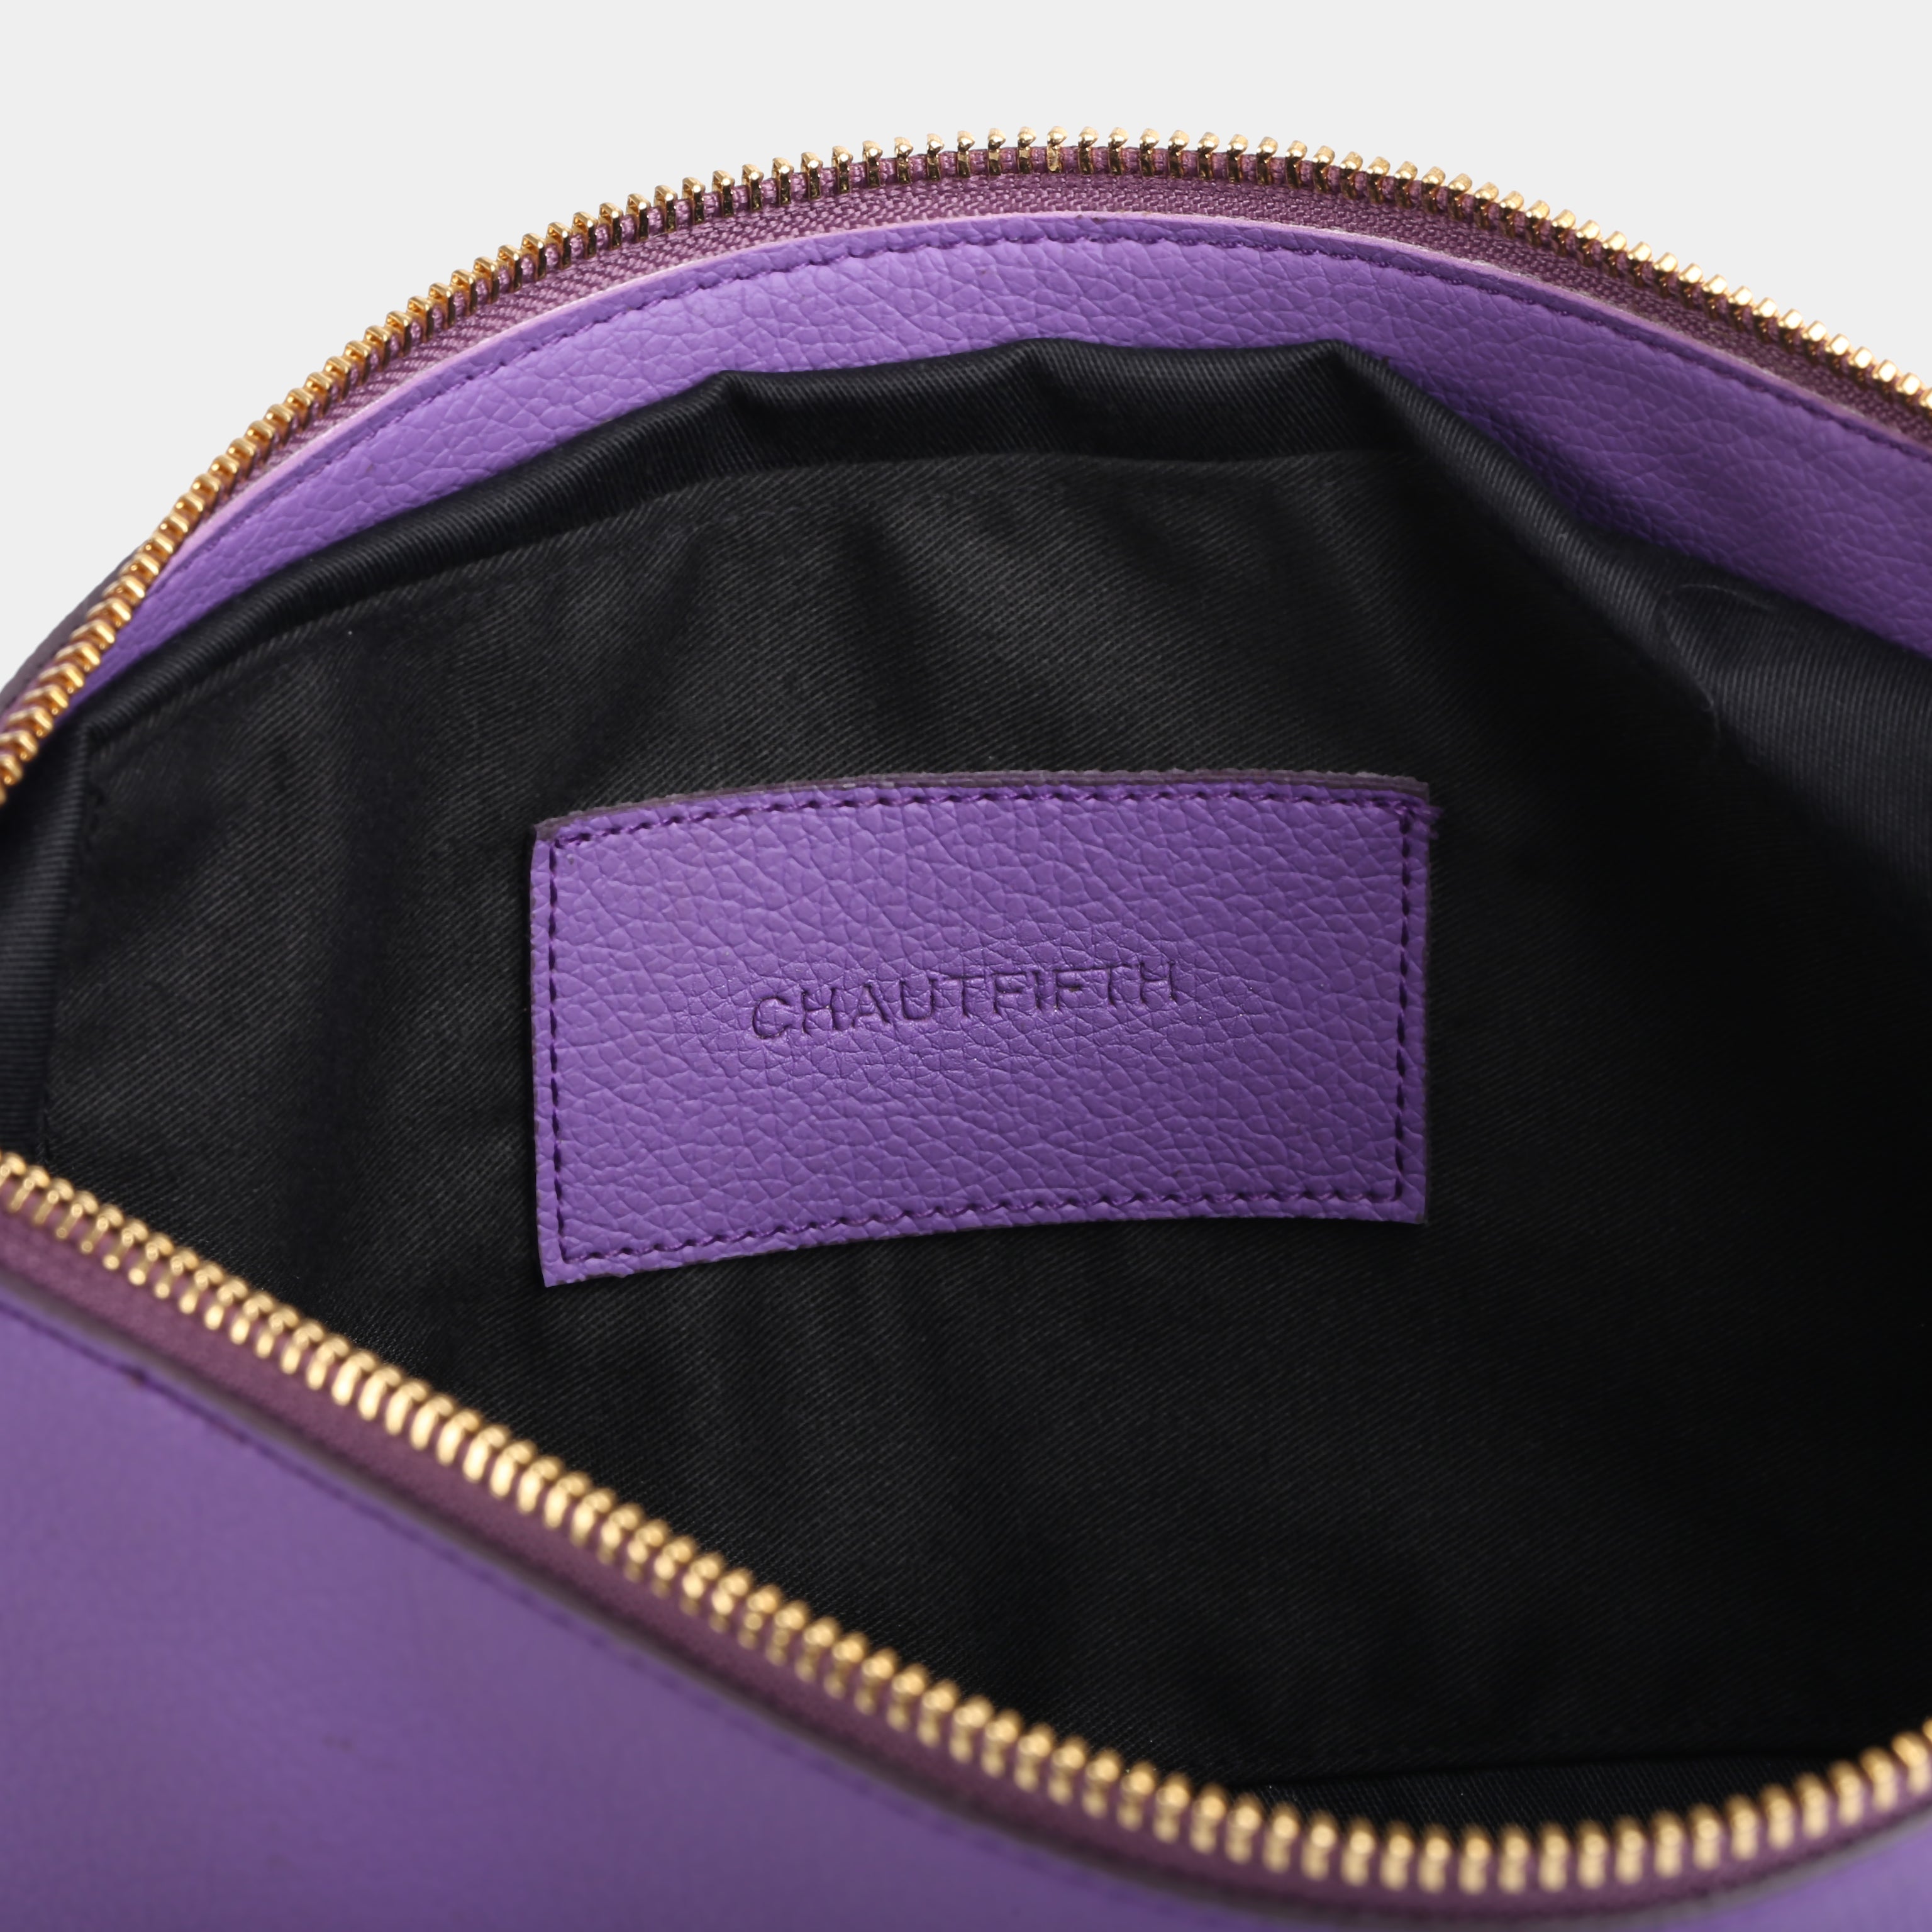 Purple M BAG handbag (small)